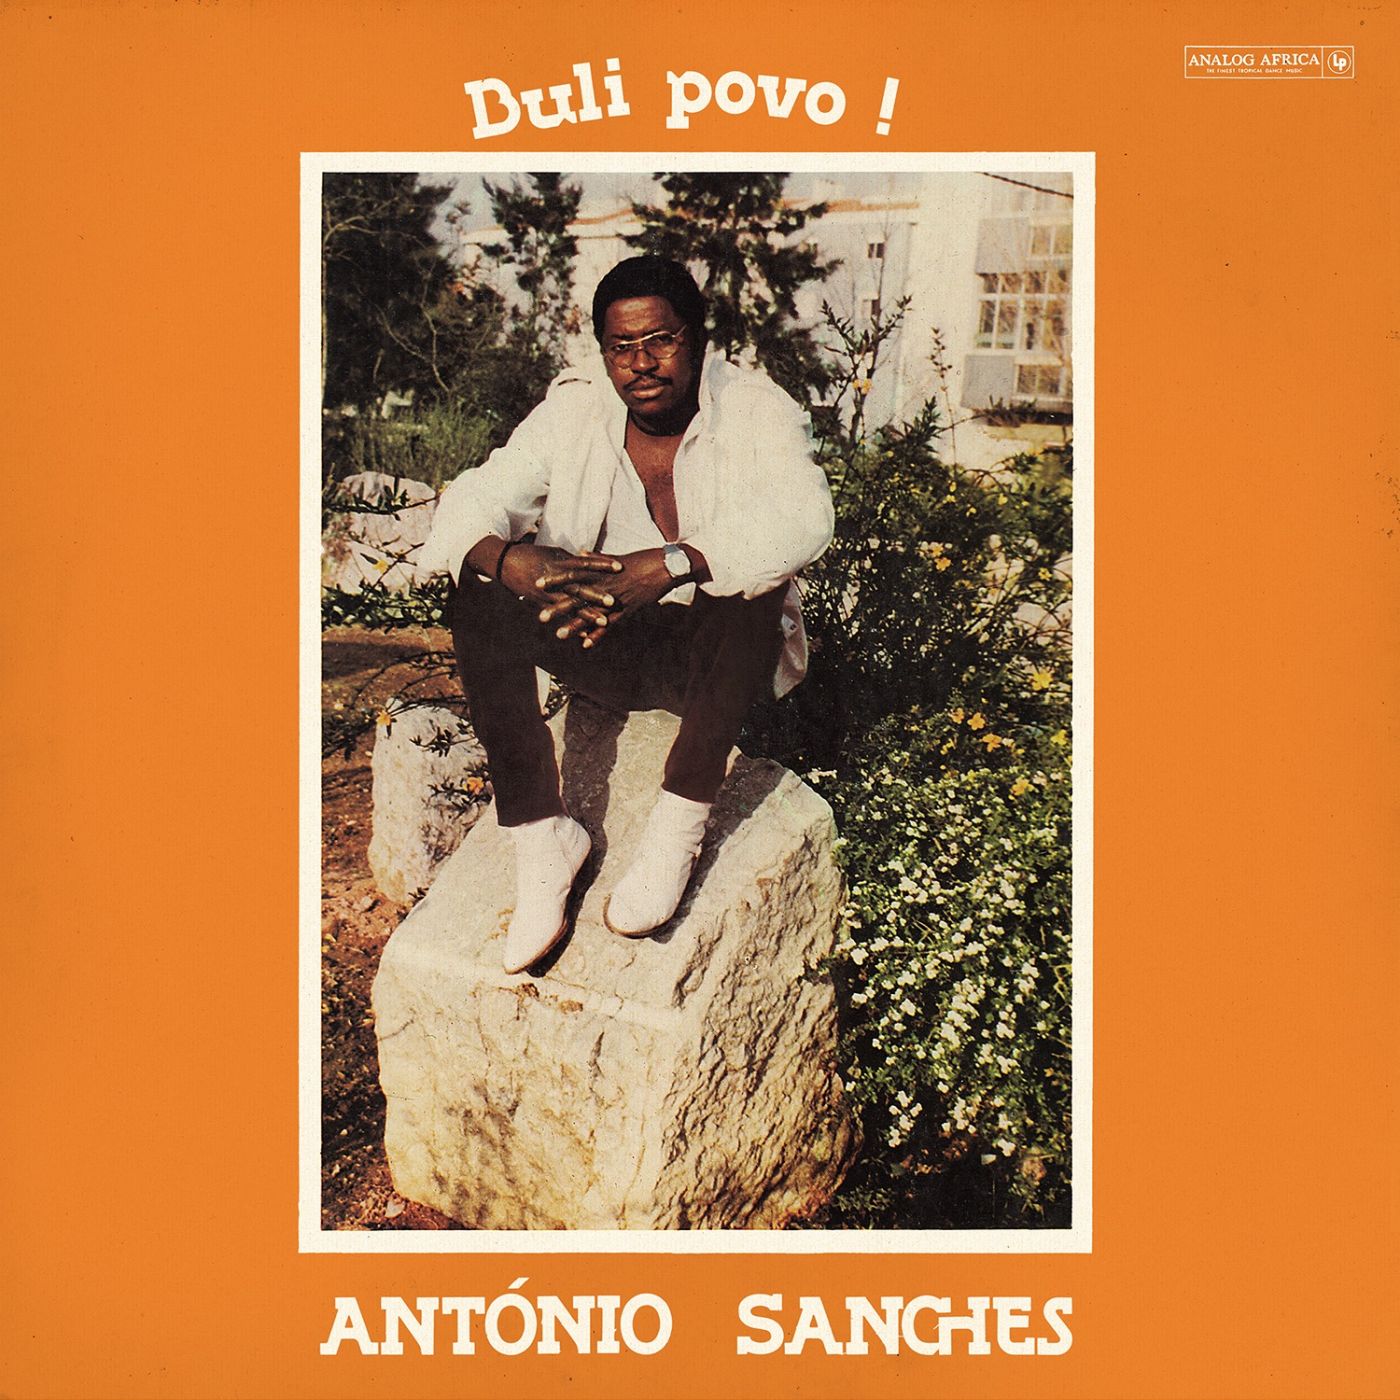 Antonio Sanches - Buli Povo! - 33RPM